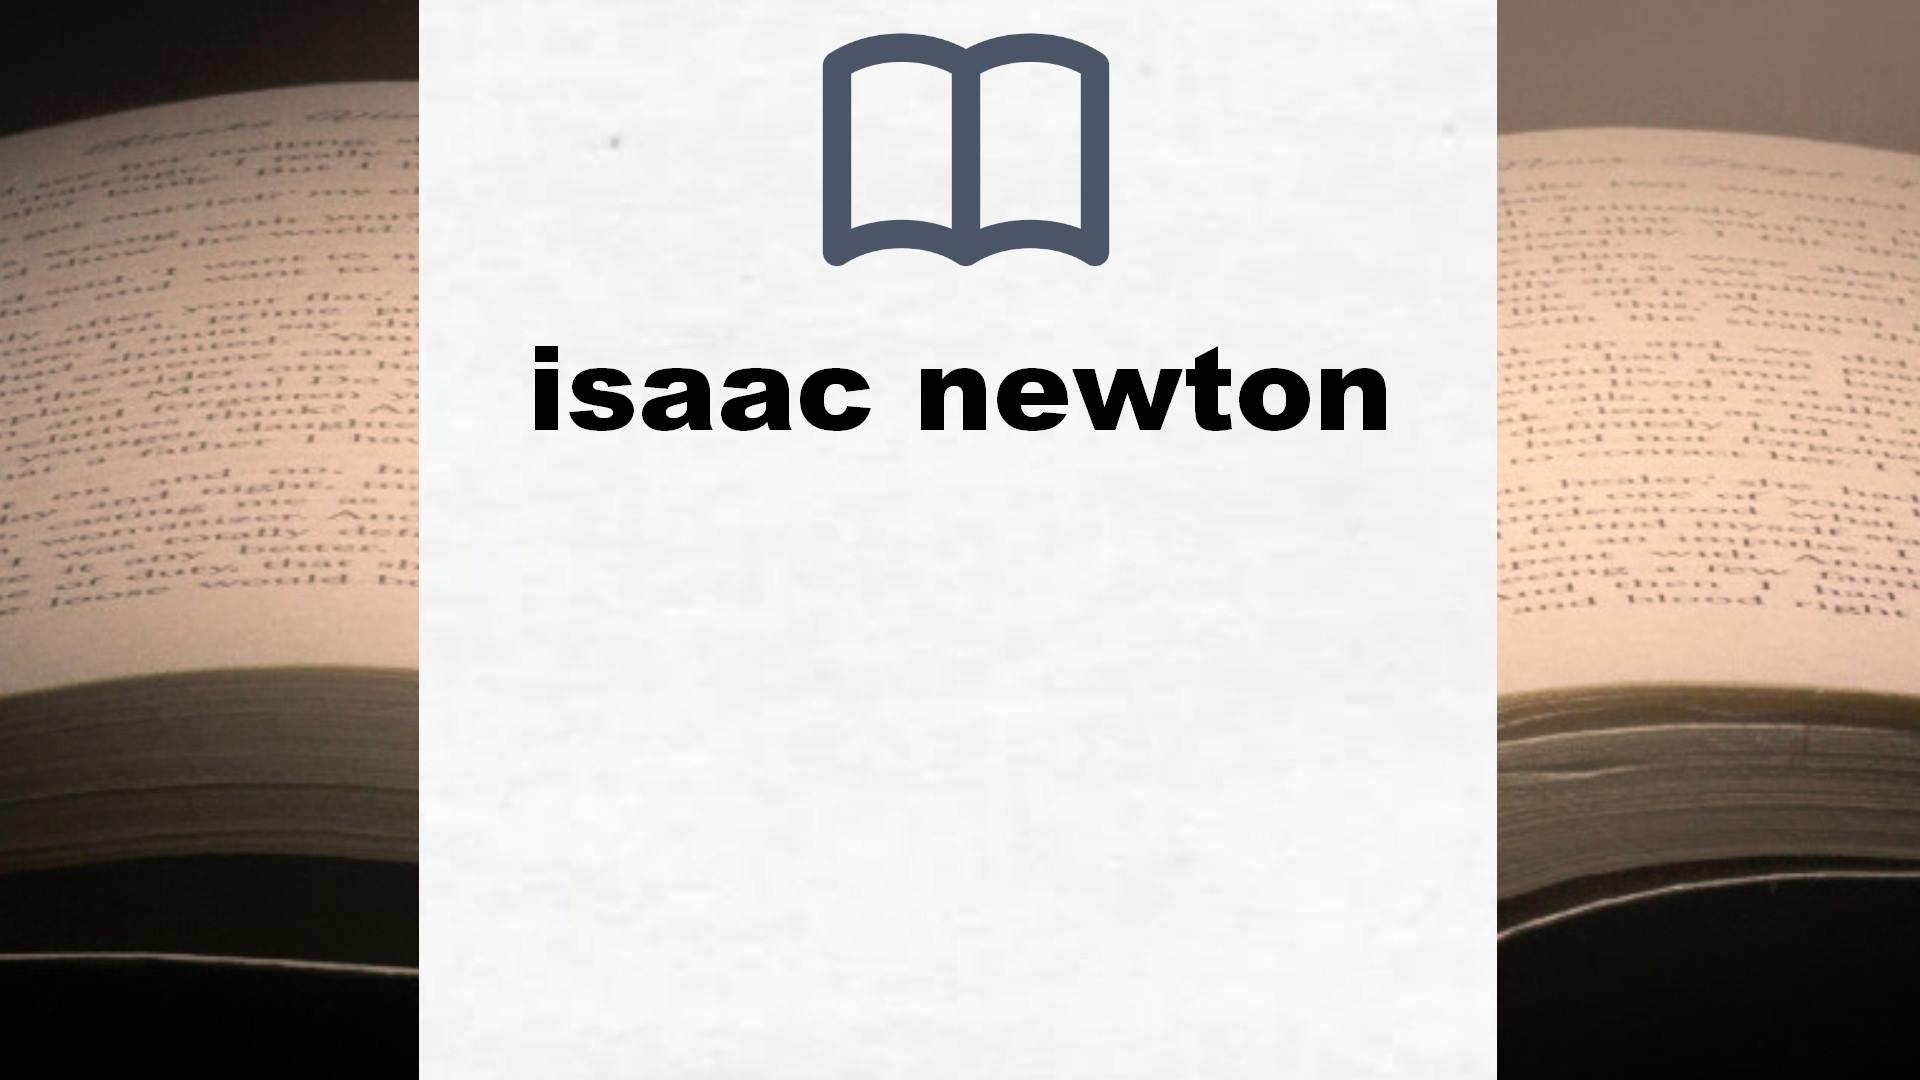 Libros sobre isaac newton